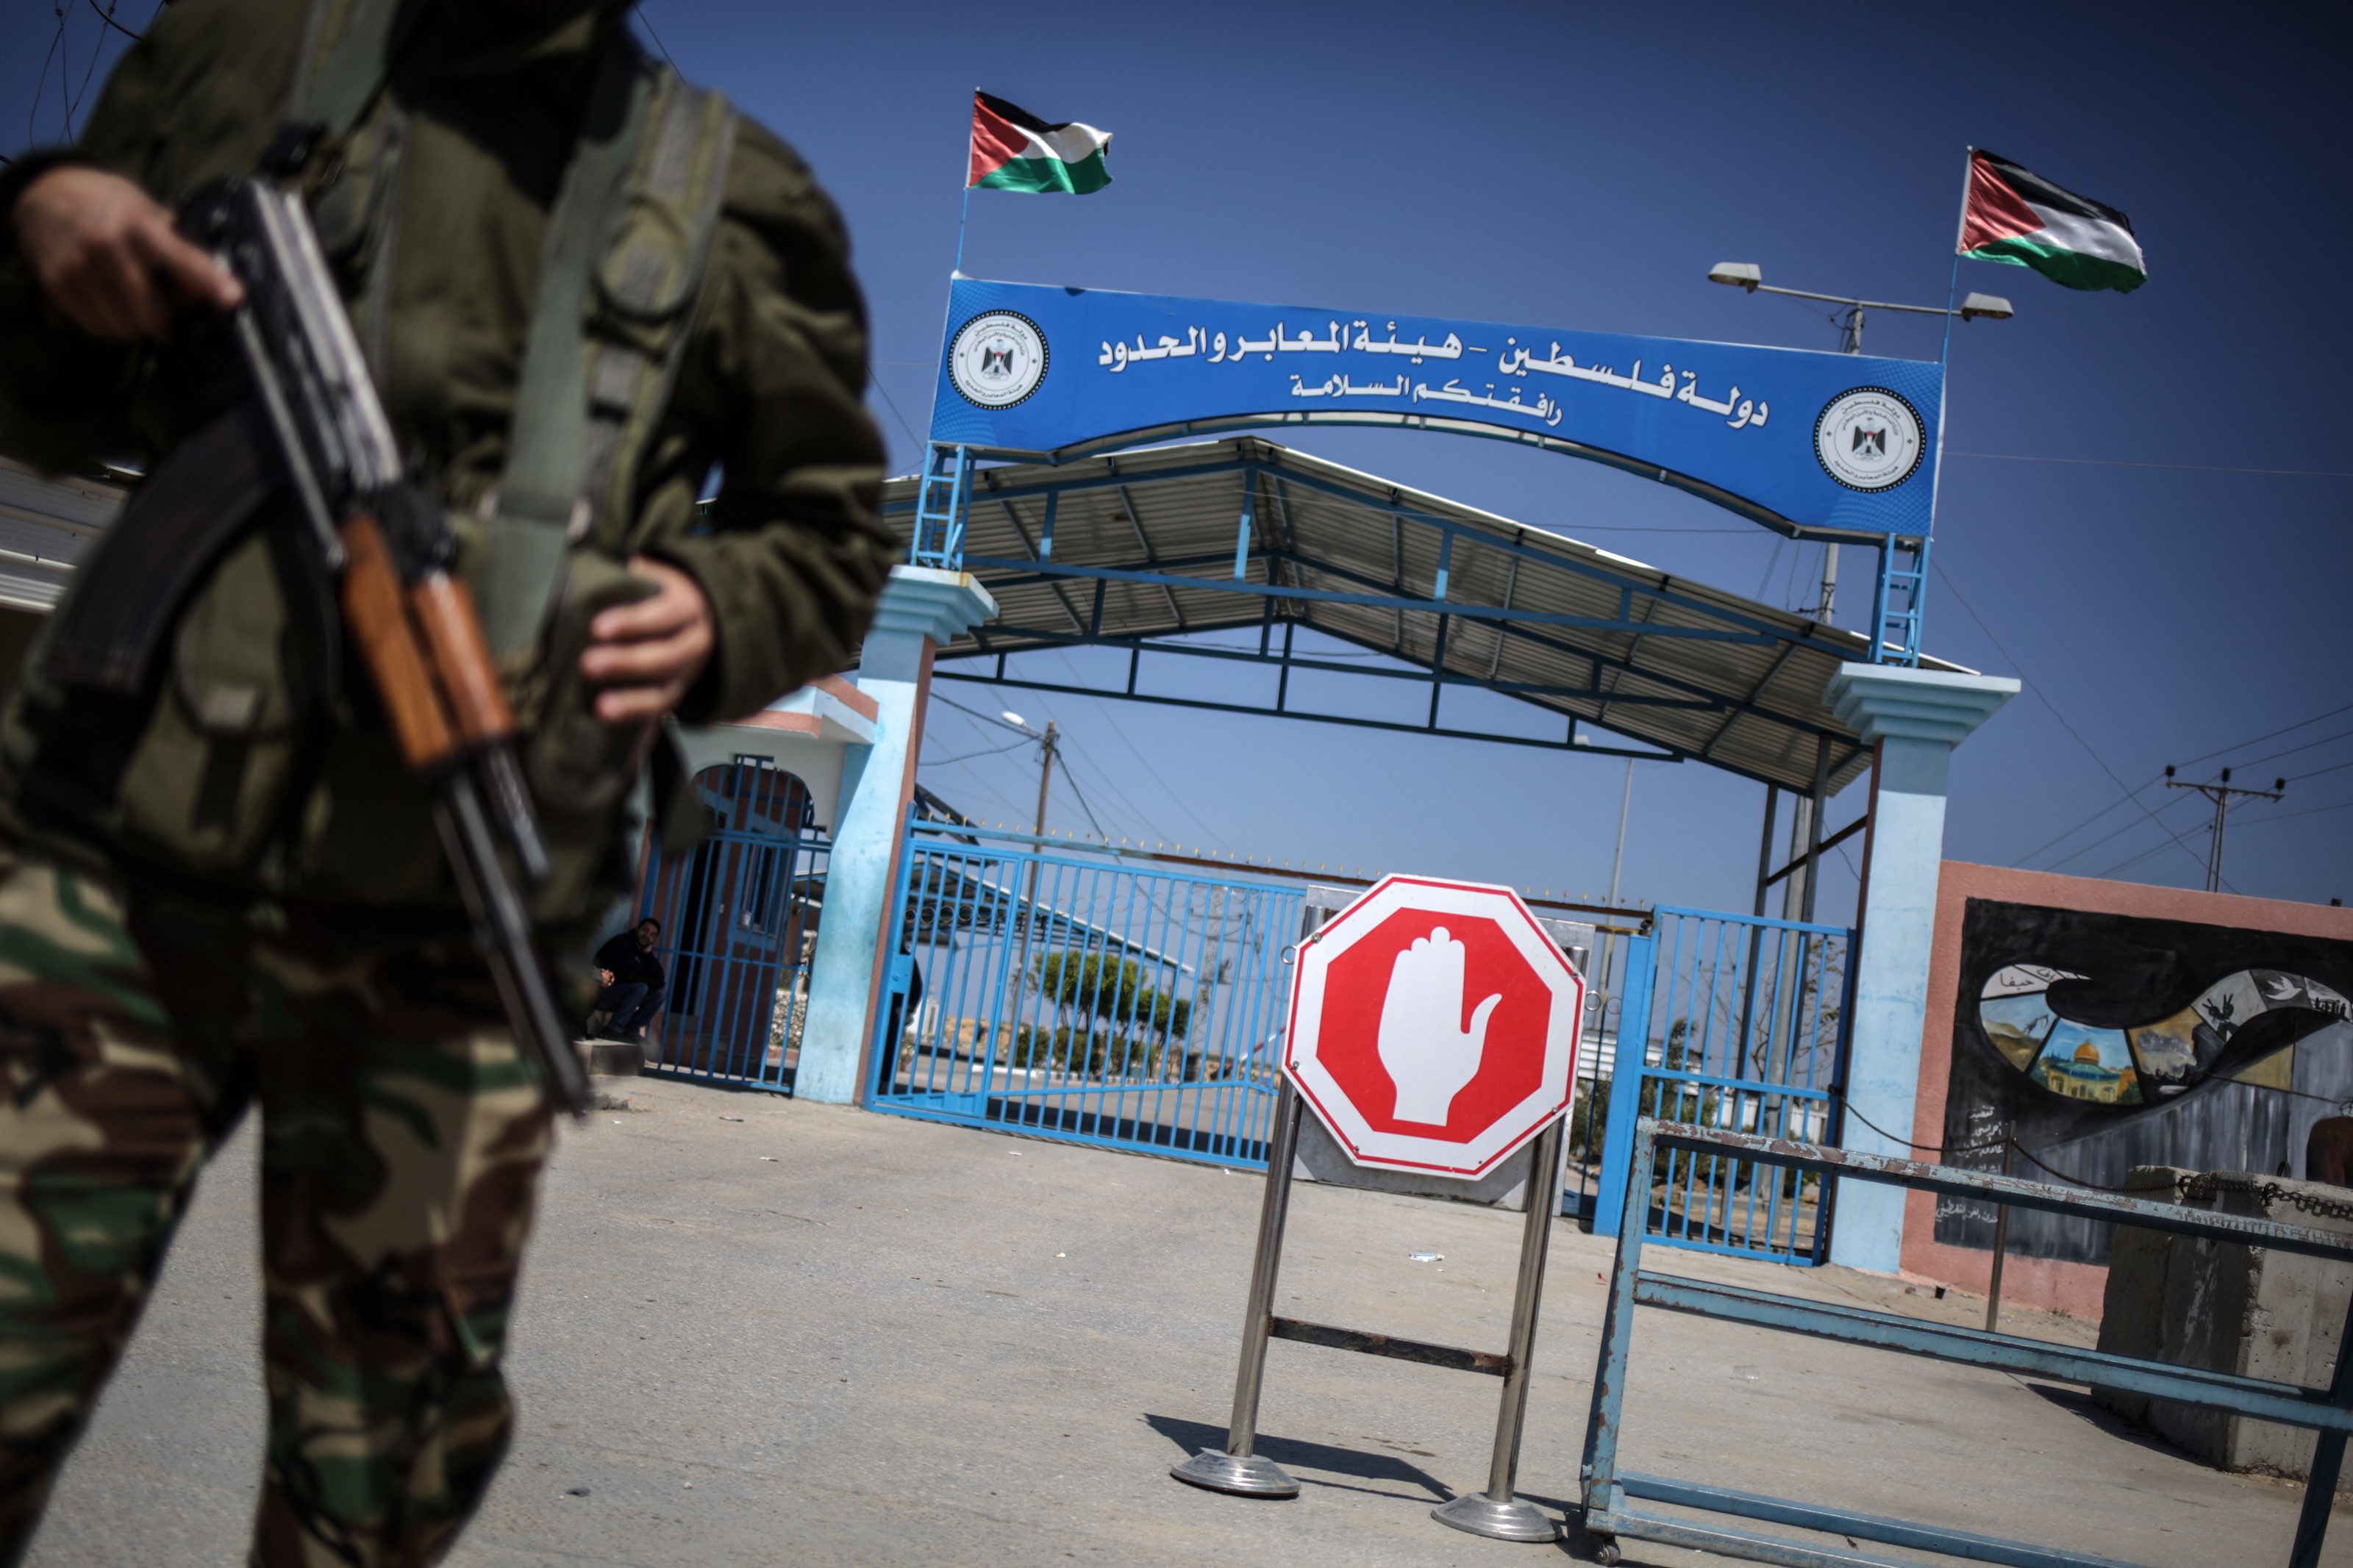 A franciák jeruzsálemi konzulátusának sofőrjét gyanúsítják fegyvercsempészettel az izraeli hatóságok